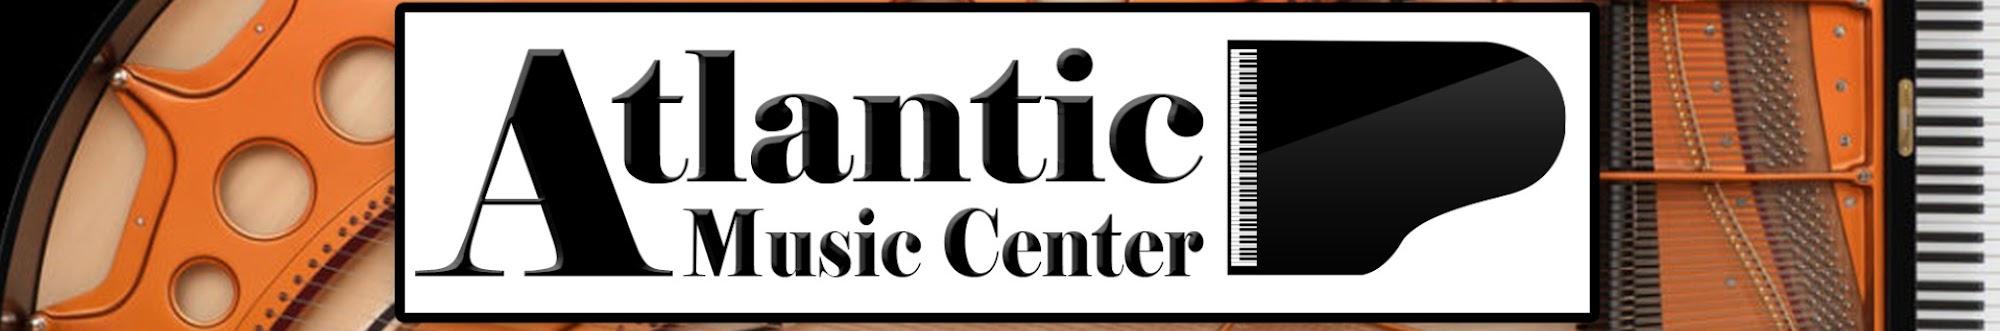 Atlantic Music Center